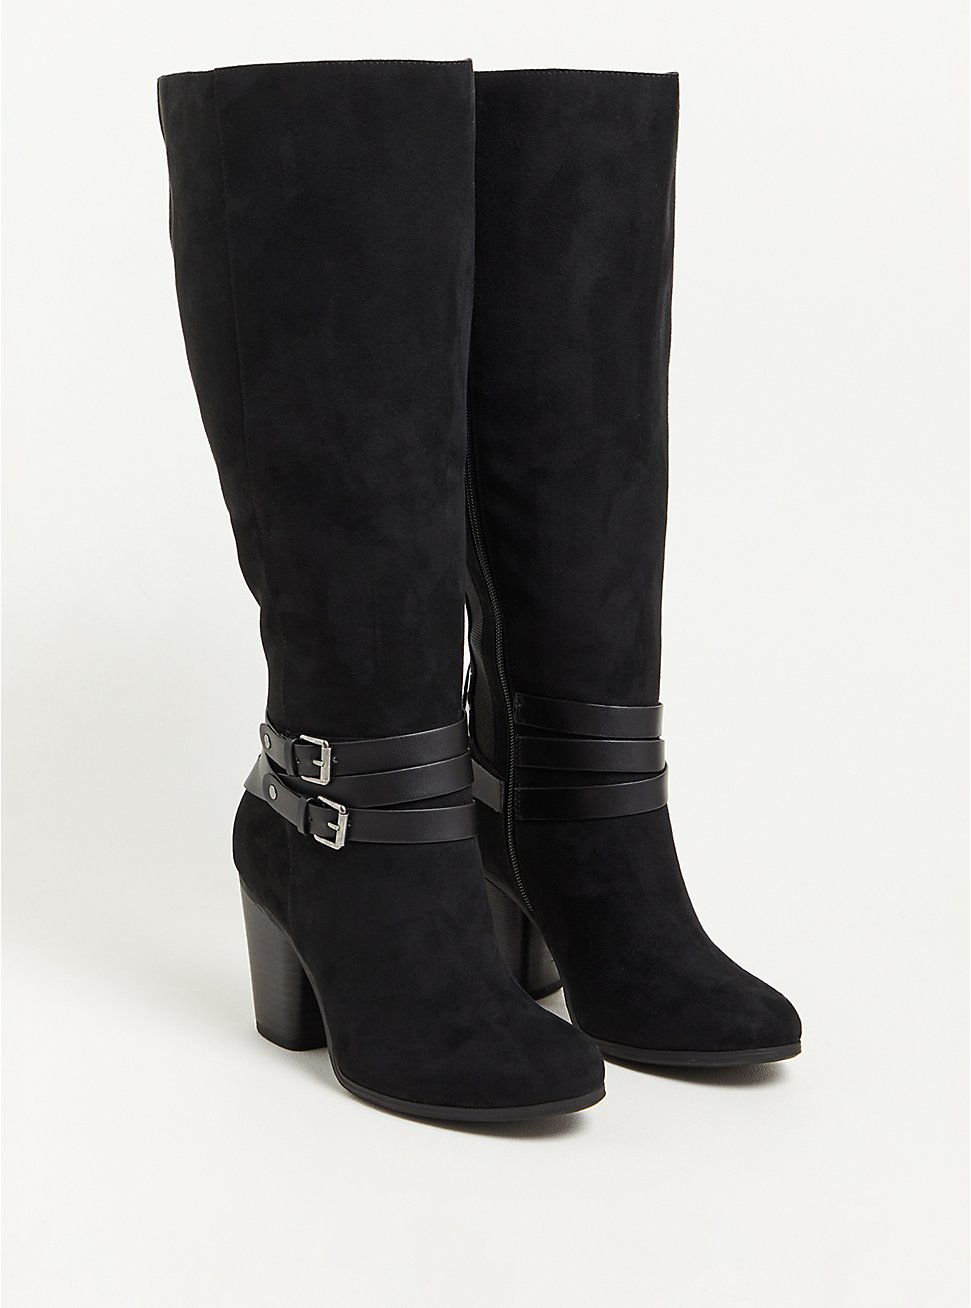 Plus Size Buckle Knee Boot - Black Faux Suede (WW), BLACK, hi-res